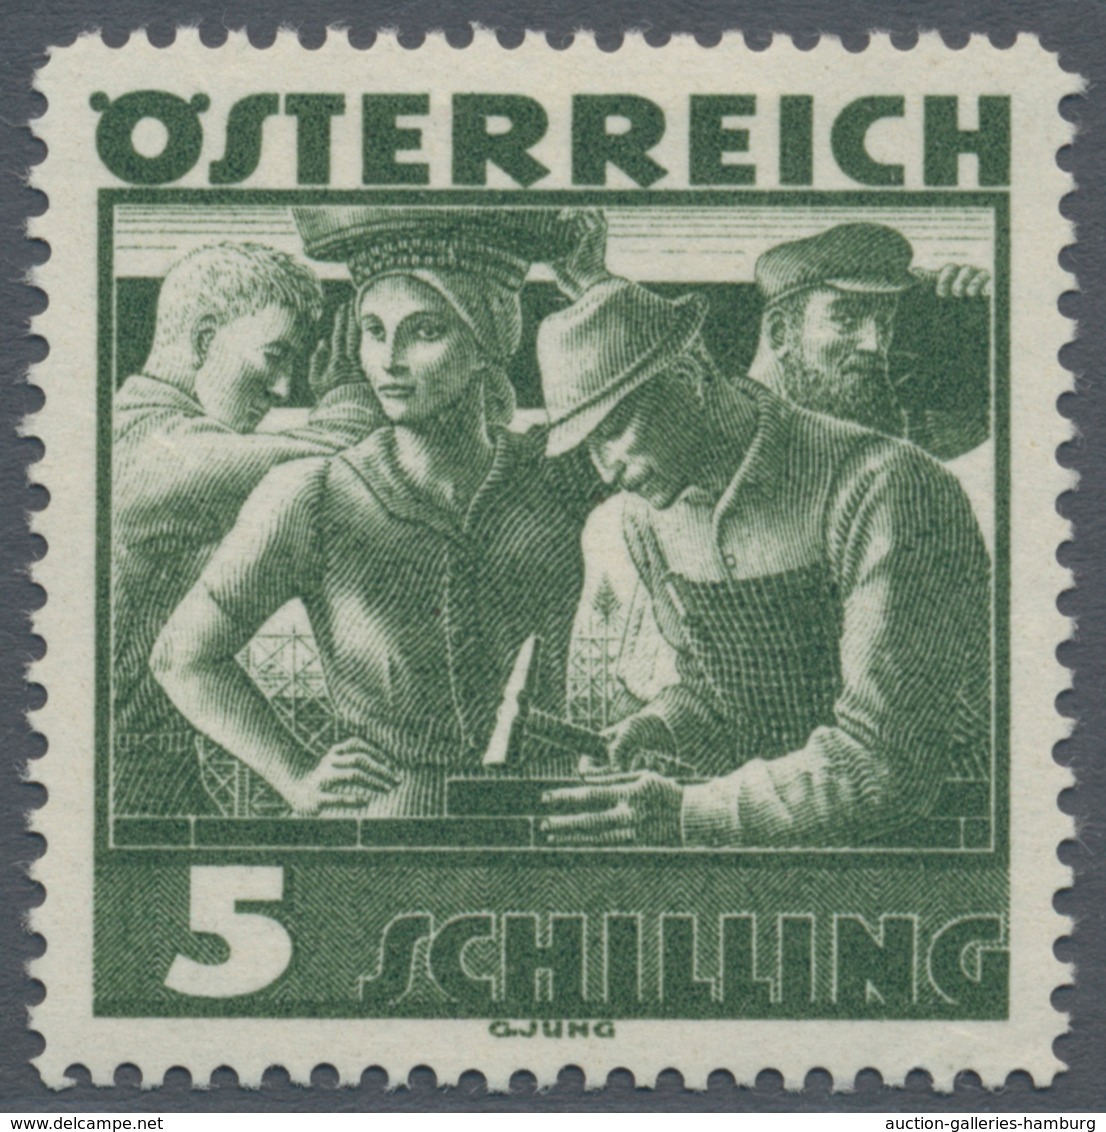 Österreich: 1934, Freimarken "Trachten", 5 Sch. "Städtische Arbeit", Vier Gezähnte Offsetdruck-Probe - Unused Stamps